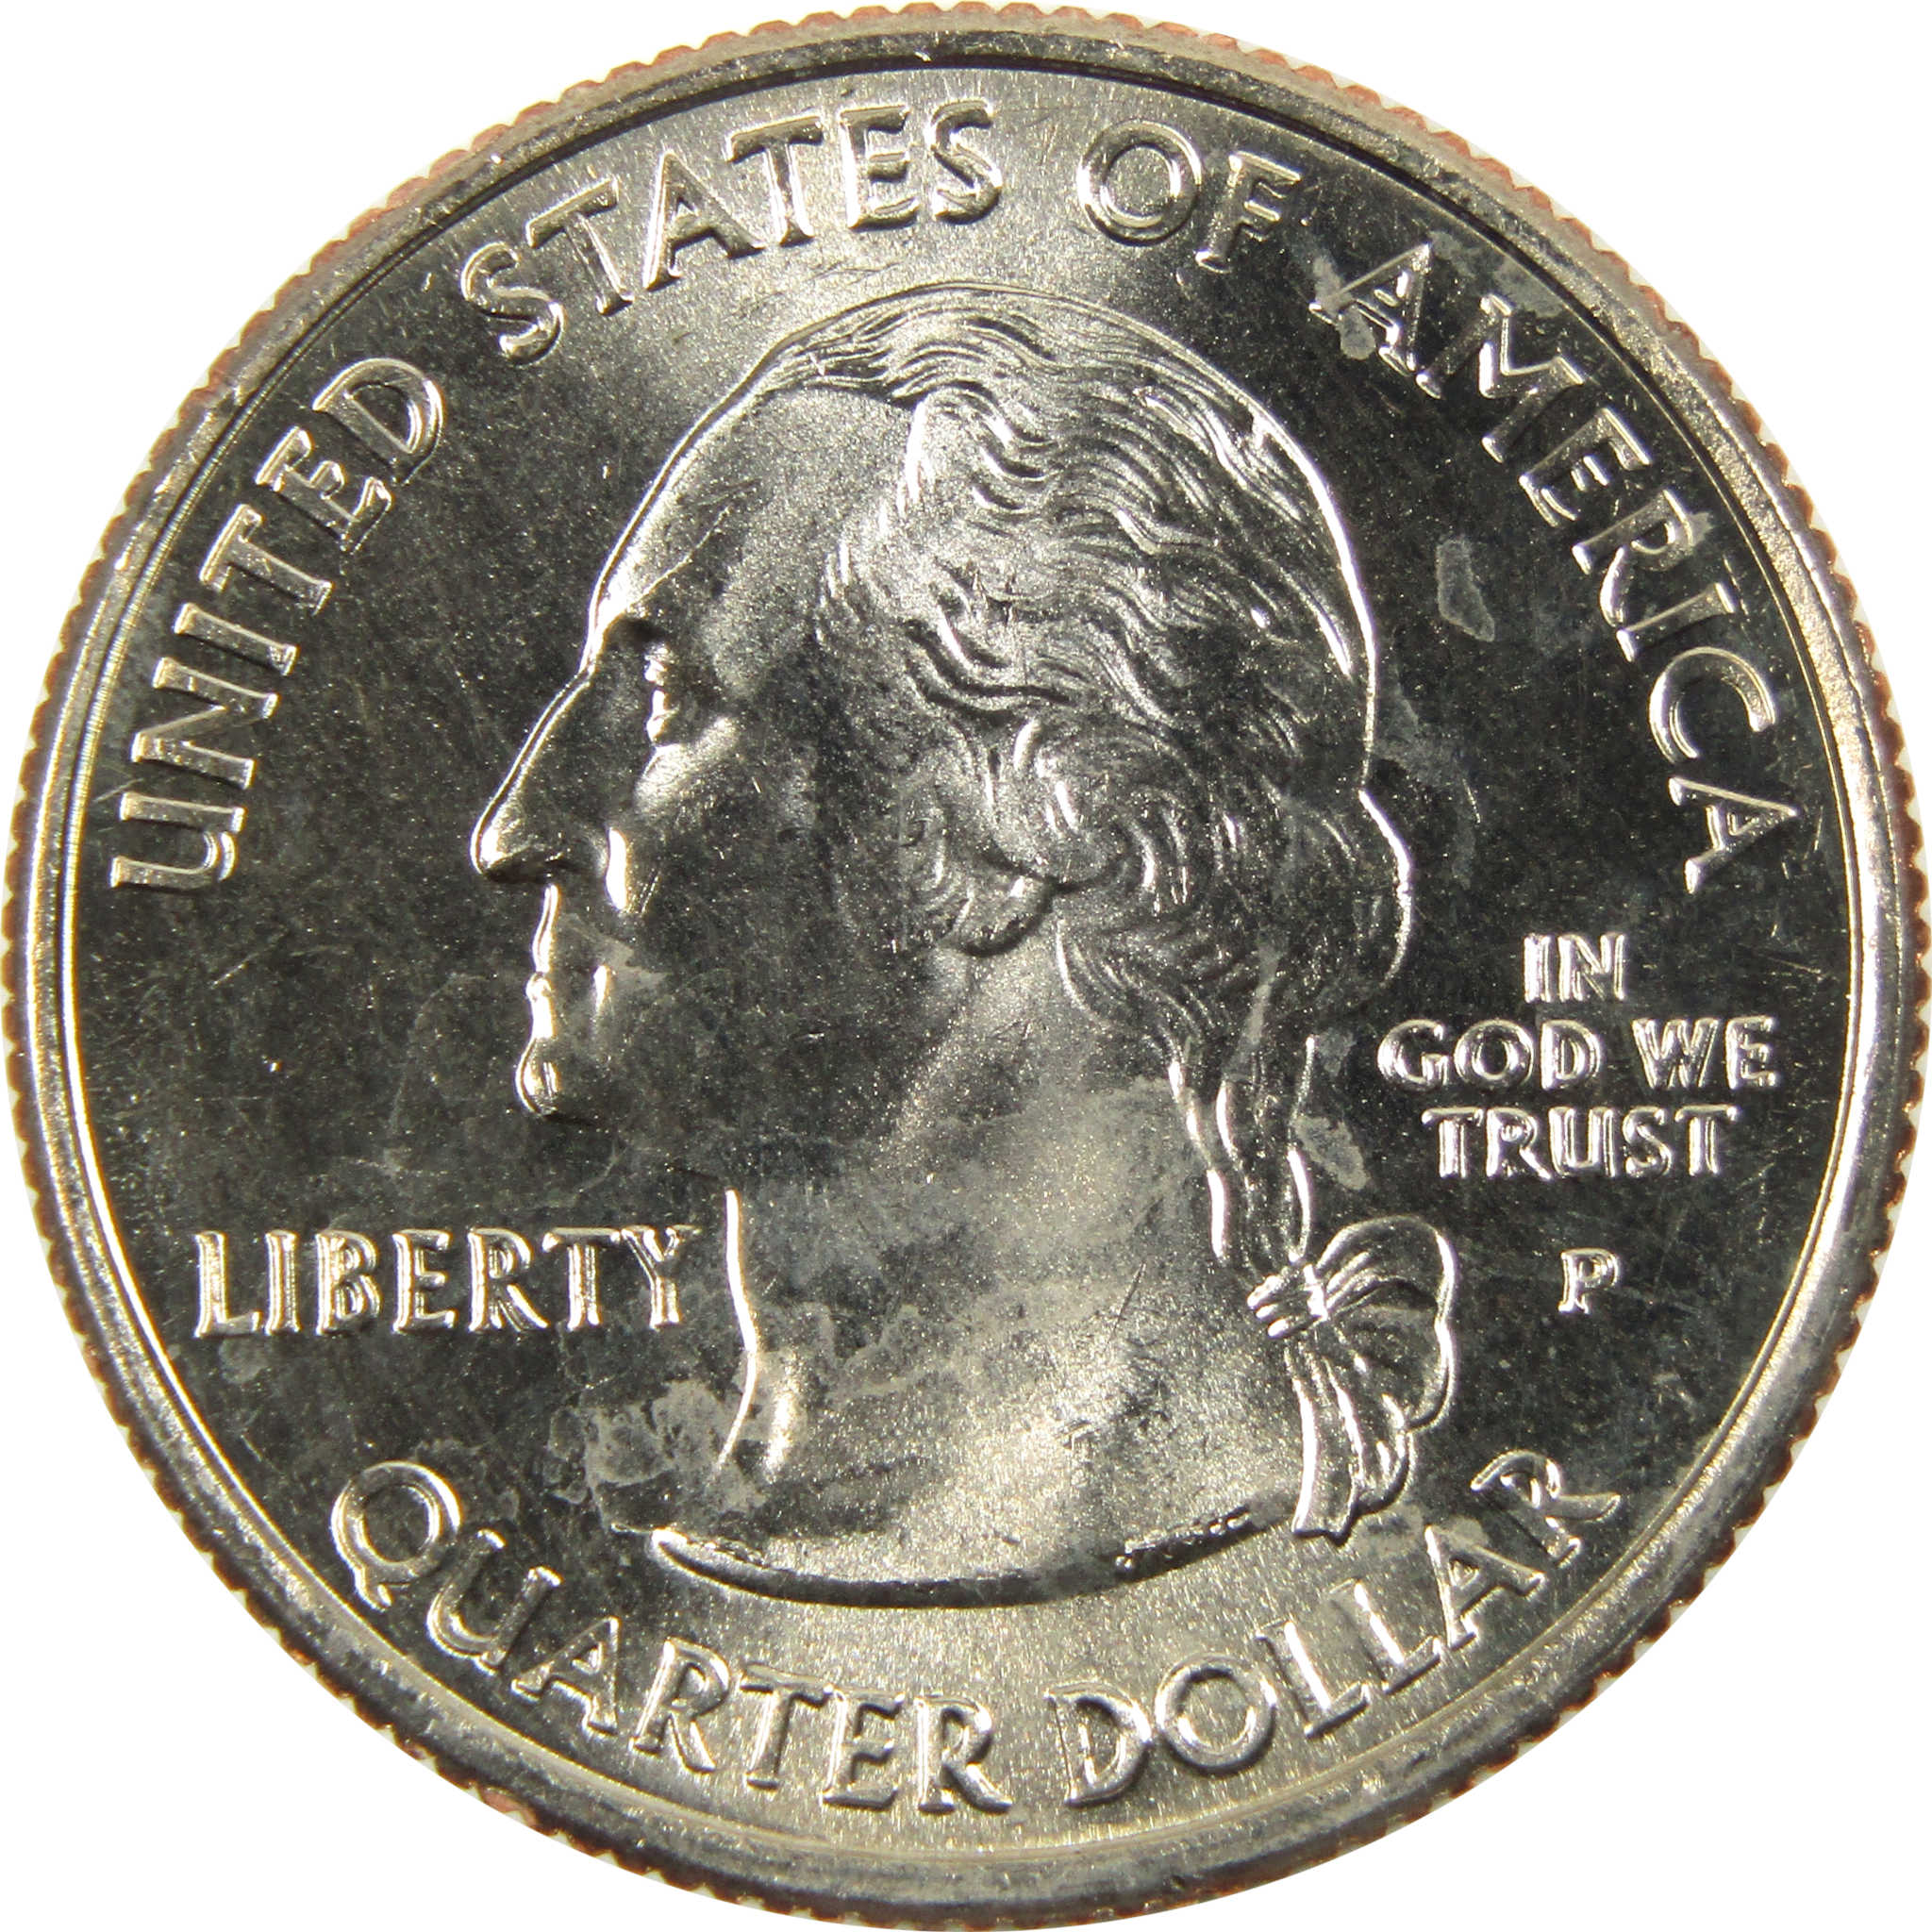 2006 P North Dakota State Quarter BU Uncirculated Clad 25c Coin